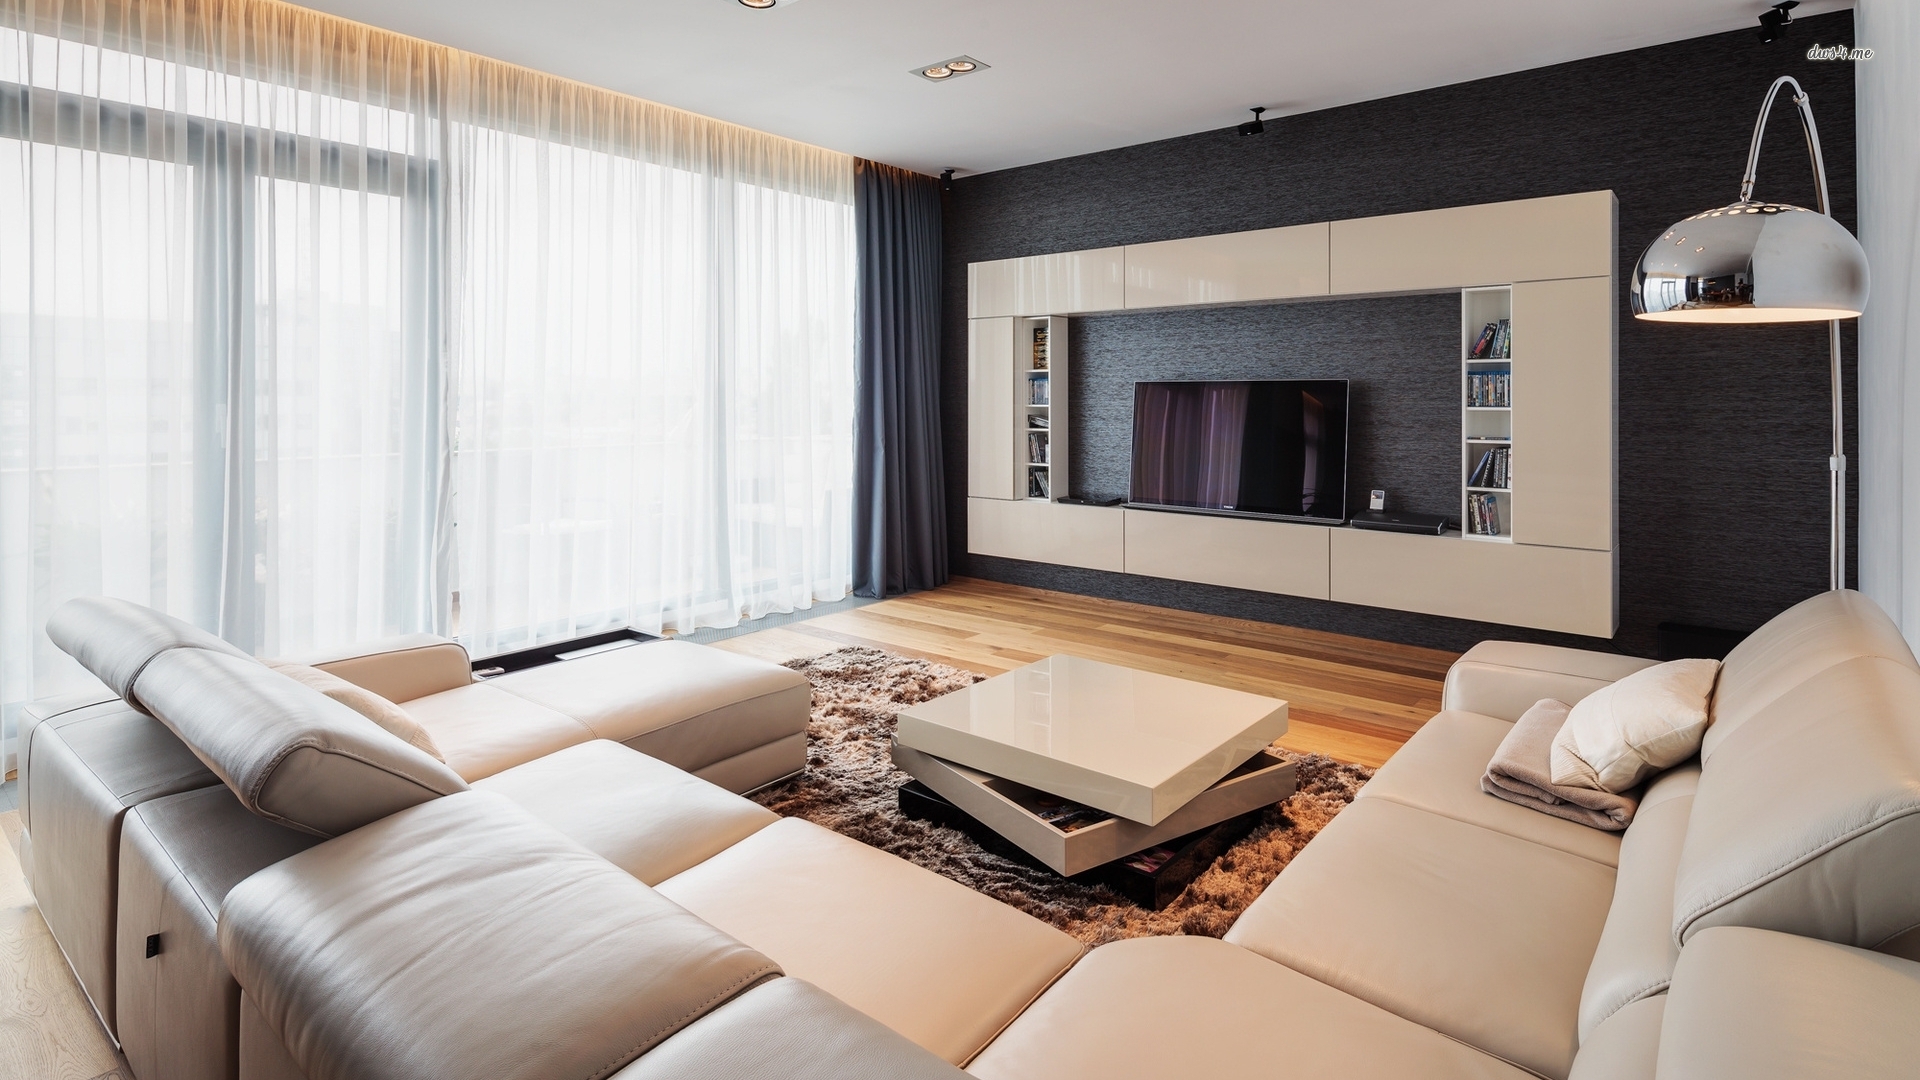 Modern Wallpaper For Small Living Room